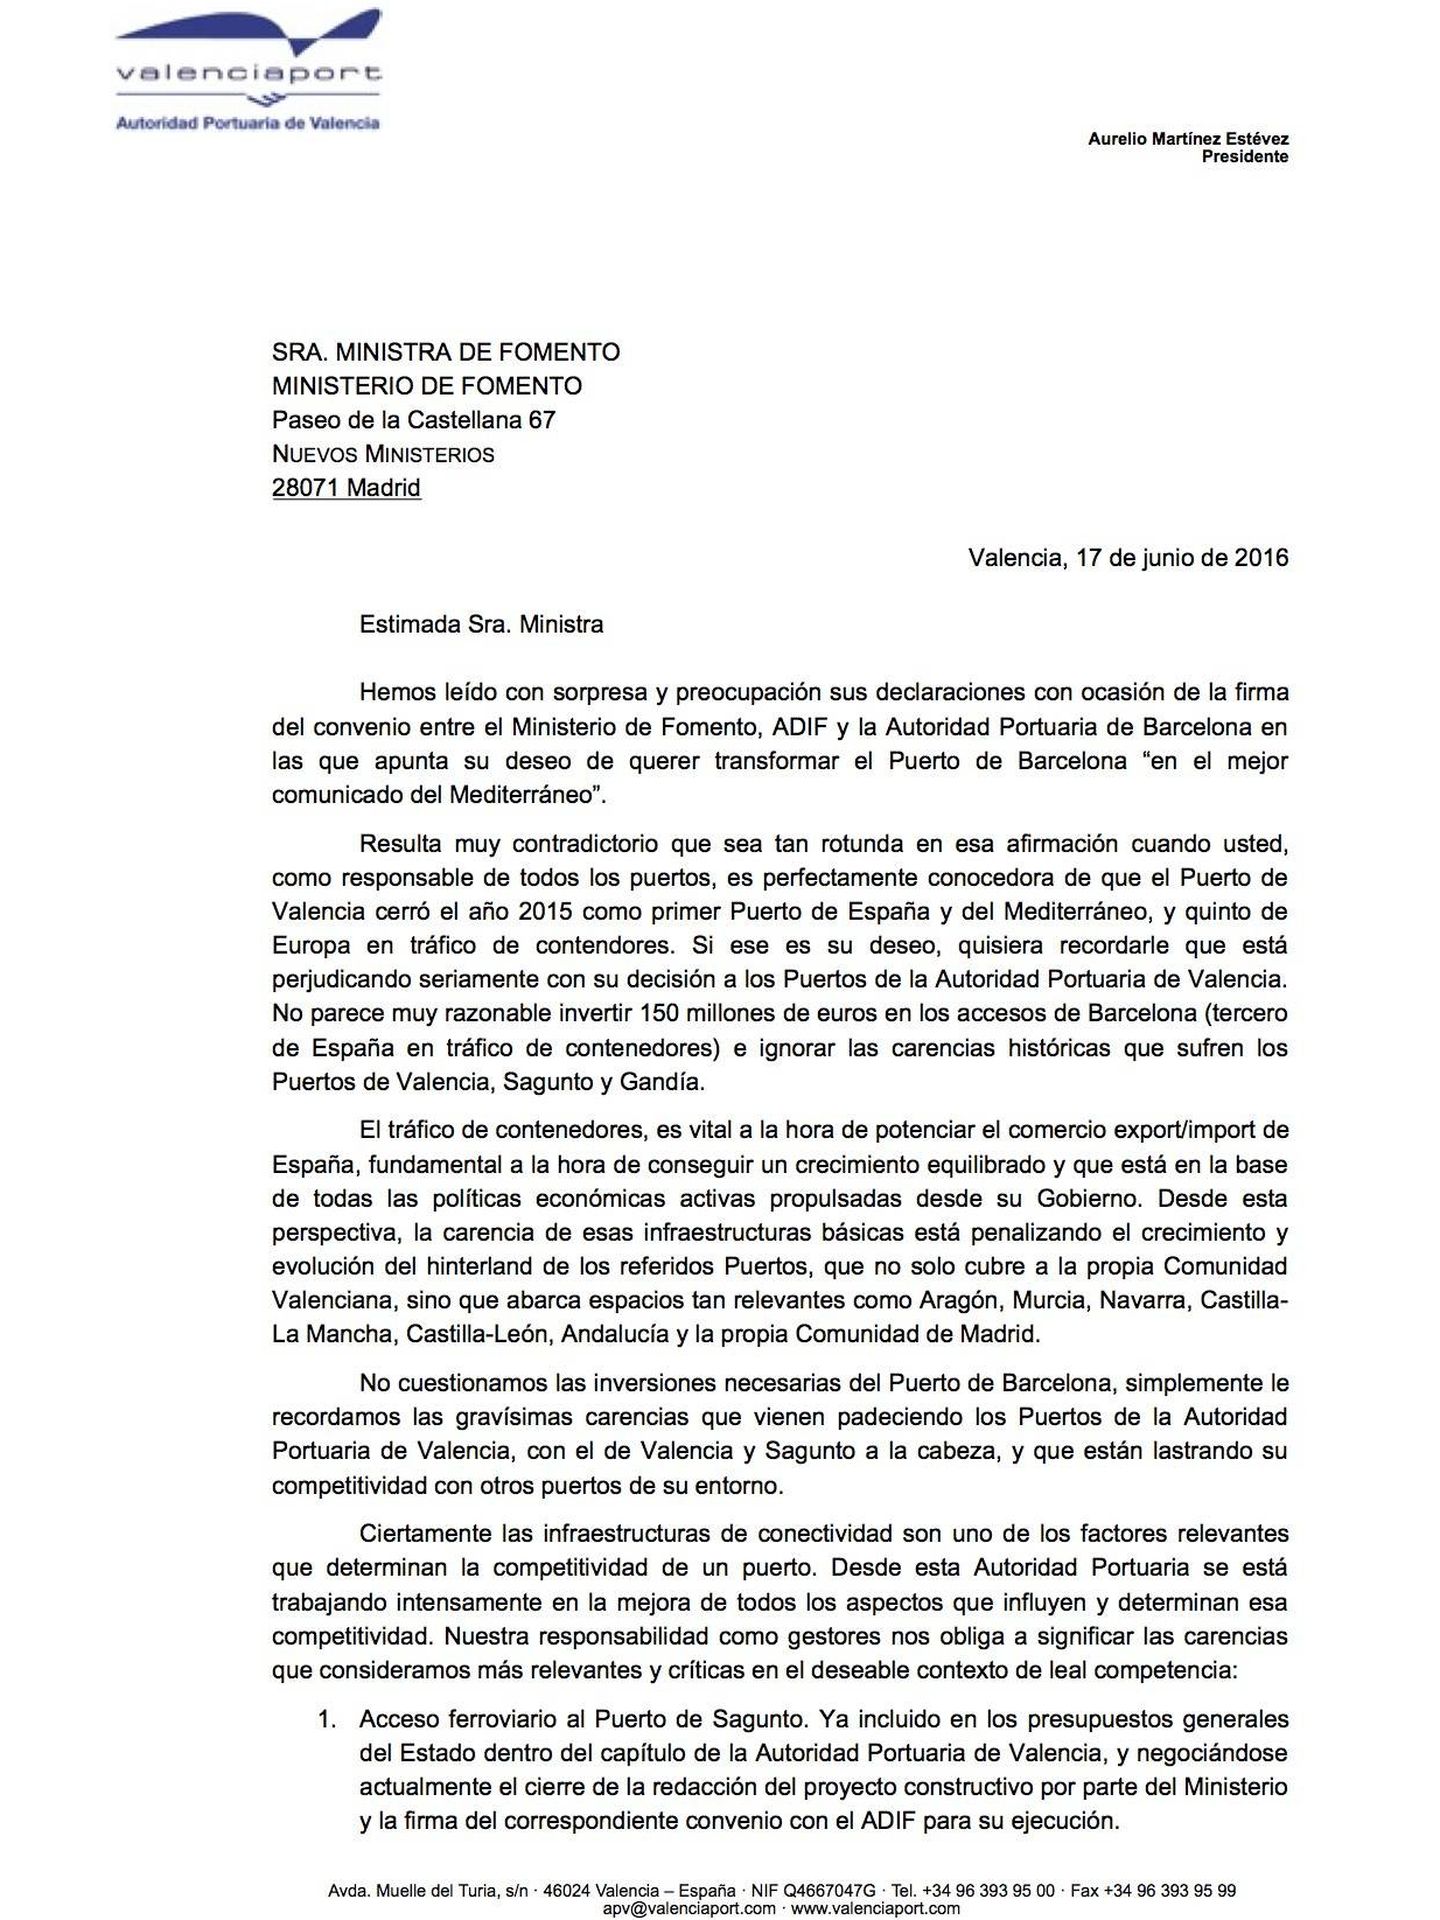 Pincha para leer la carta de Aurelio Martínez, presidente del Puerto de Valencia, a la ministra Ana Pastor.